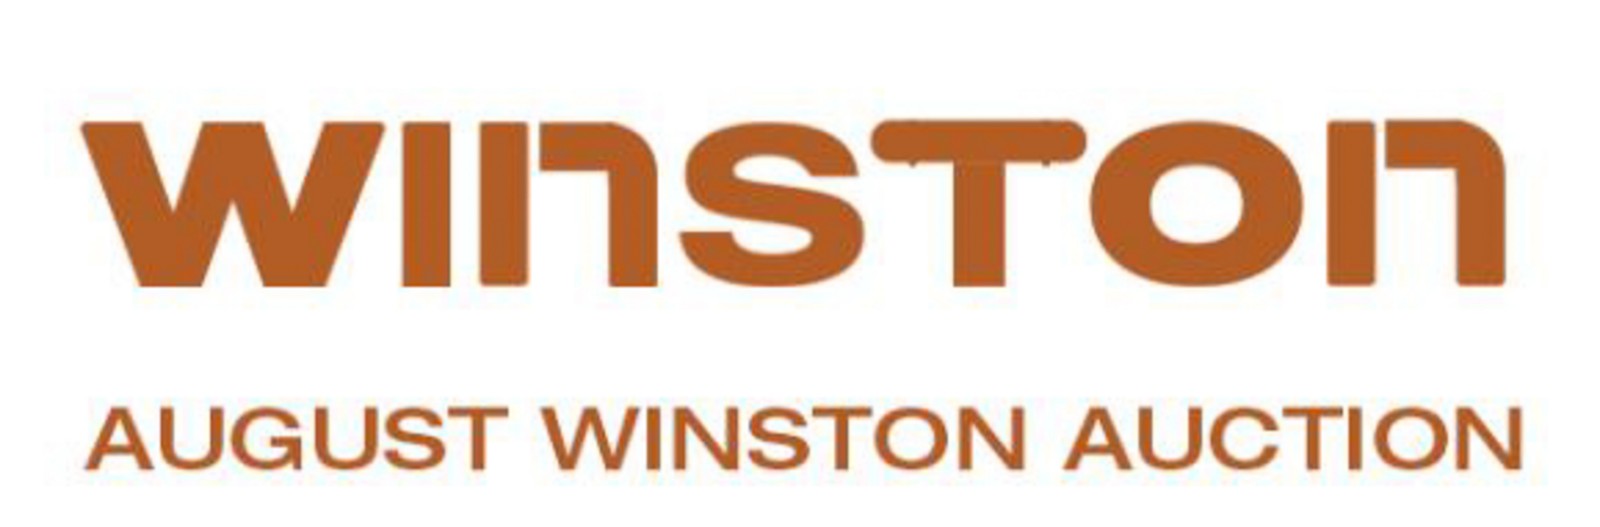 August Winston Auction House Ltd 